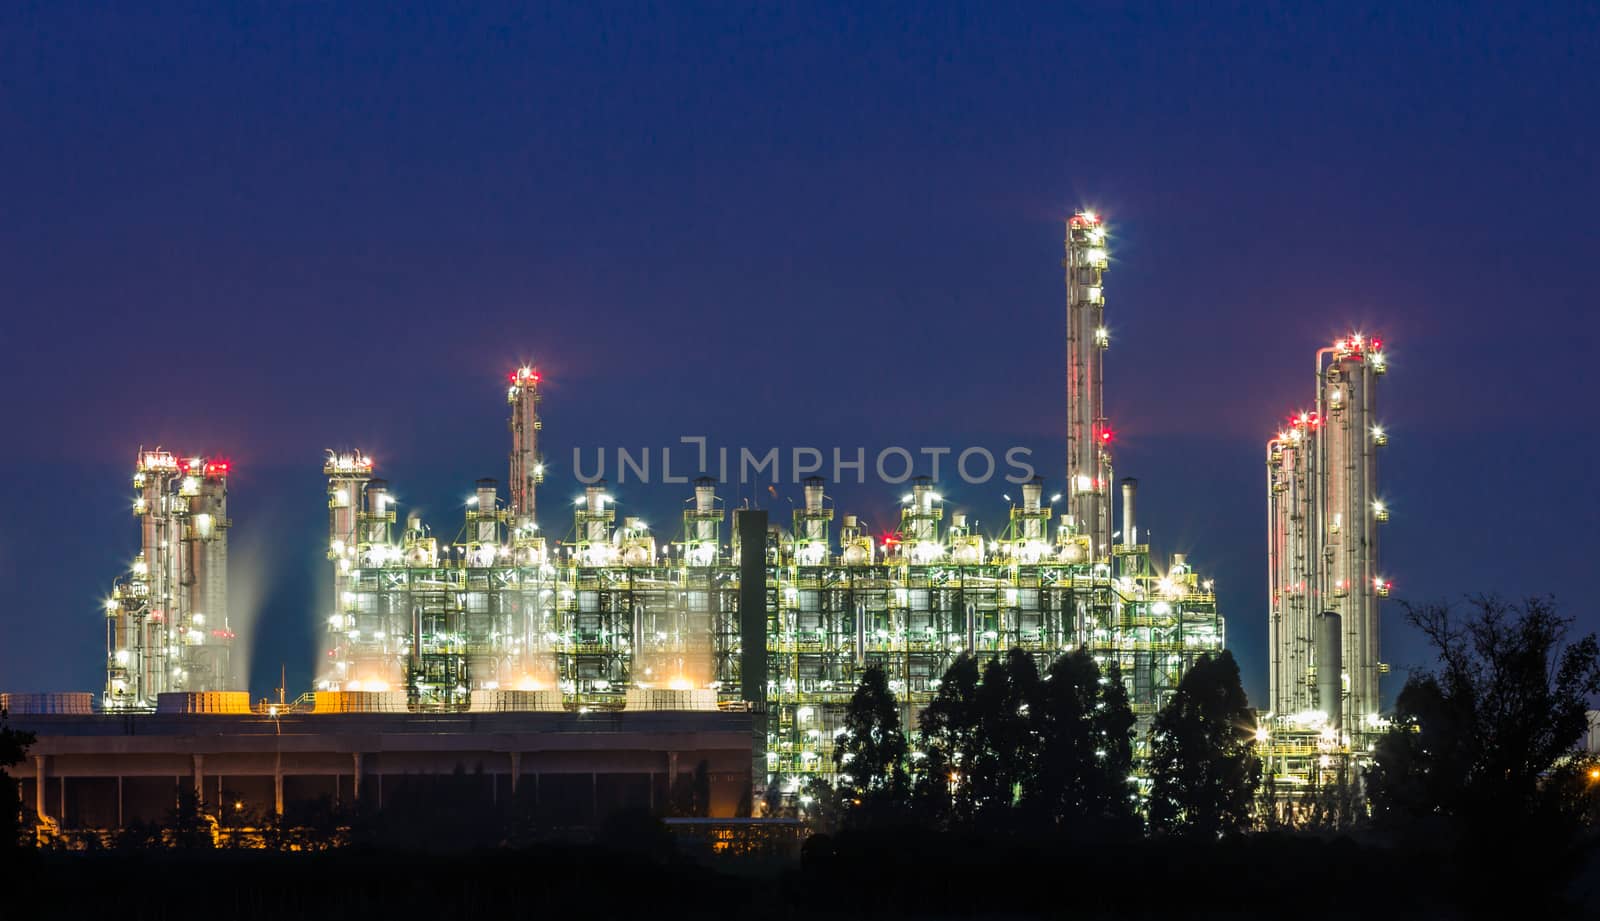 oil refinery on night by blackzheep